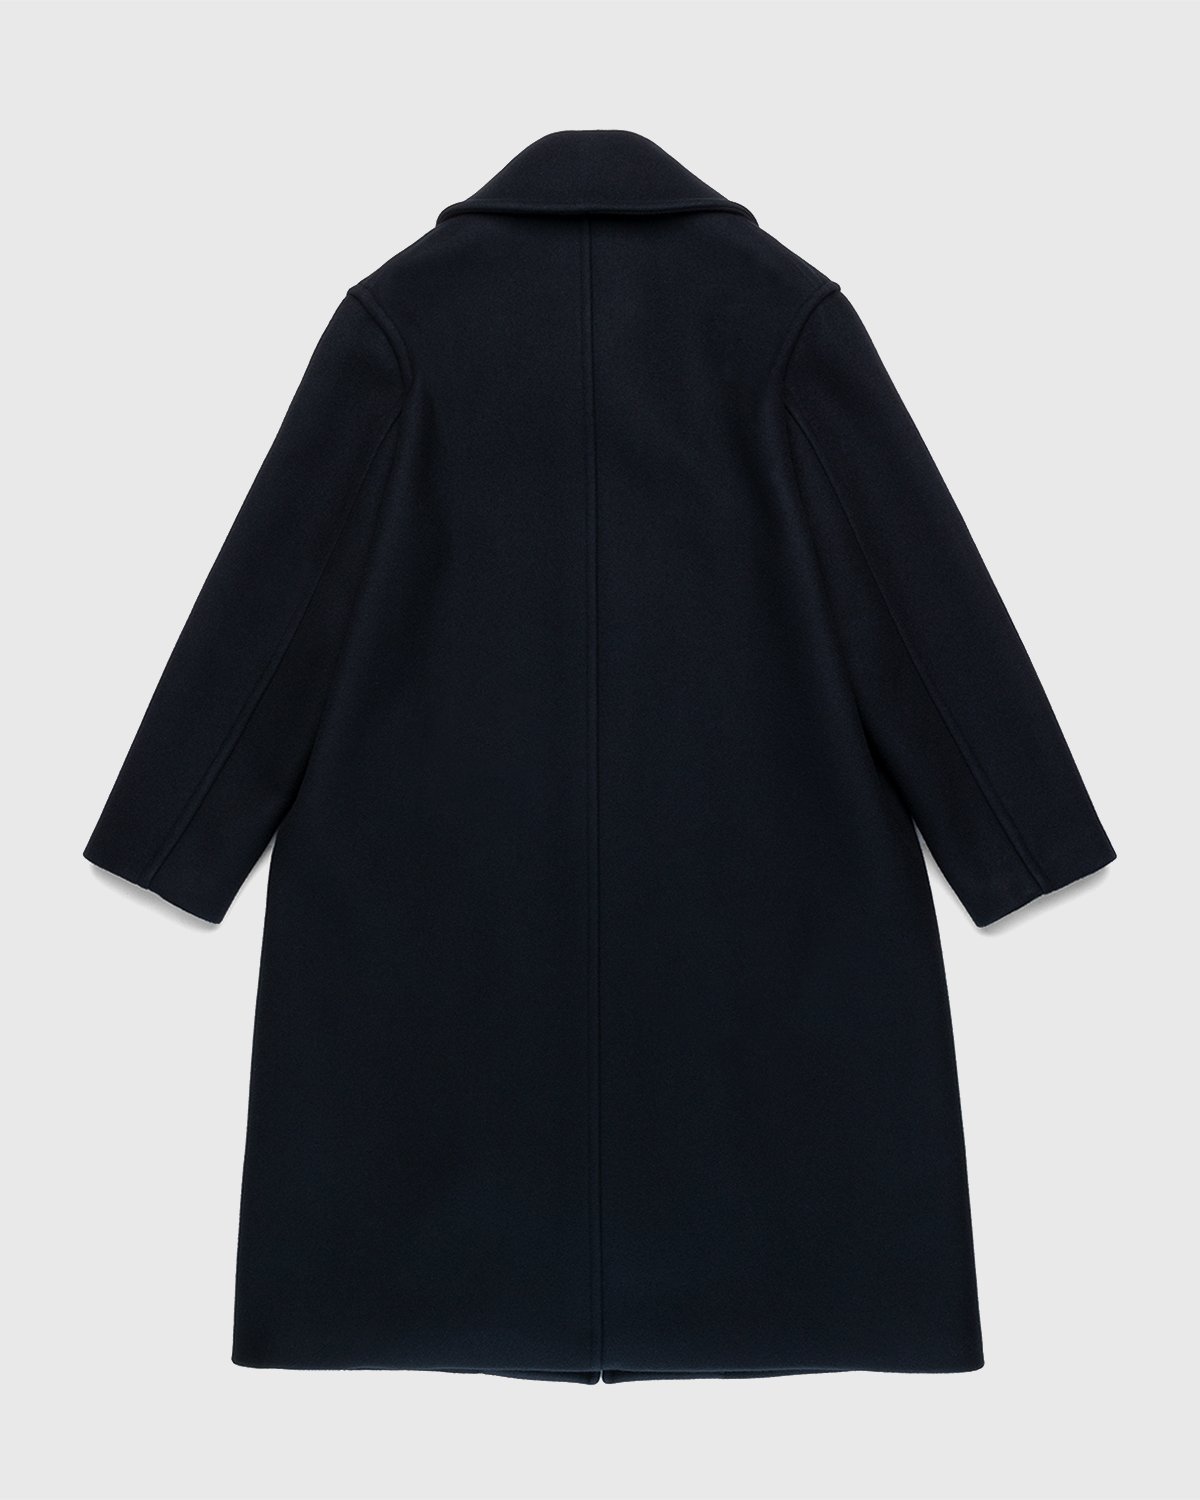 Jil Sander - Coat Black - Clothing - Black - Image 2